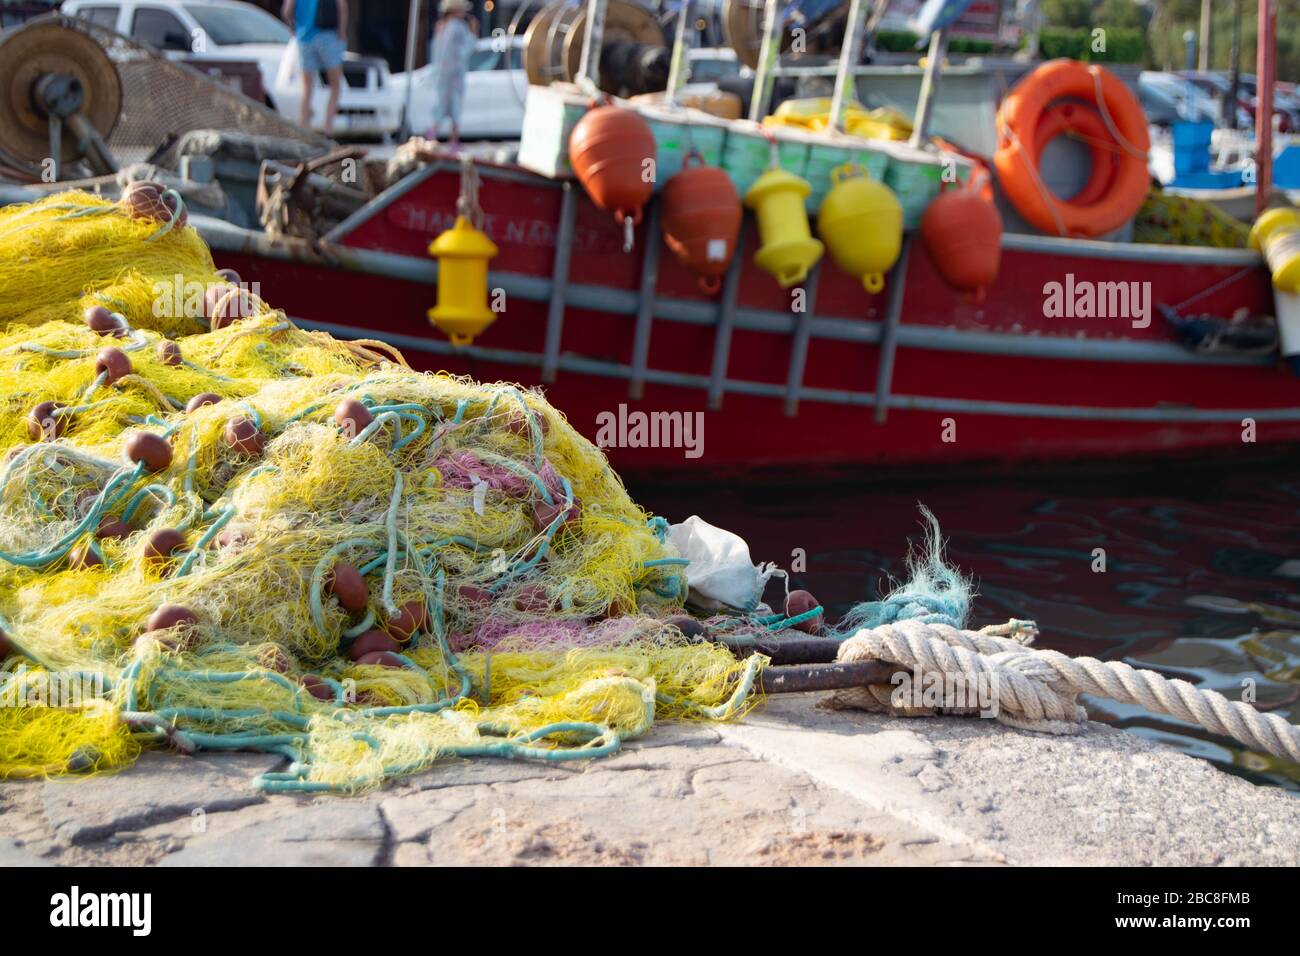 Des filets de pêche se sont accumulés sur le côté d'une marina de l'île grecque de Crète, avec un petit bateau de pêche rouge en arrière-plan Banque D'Images